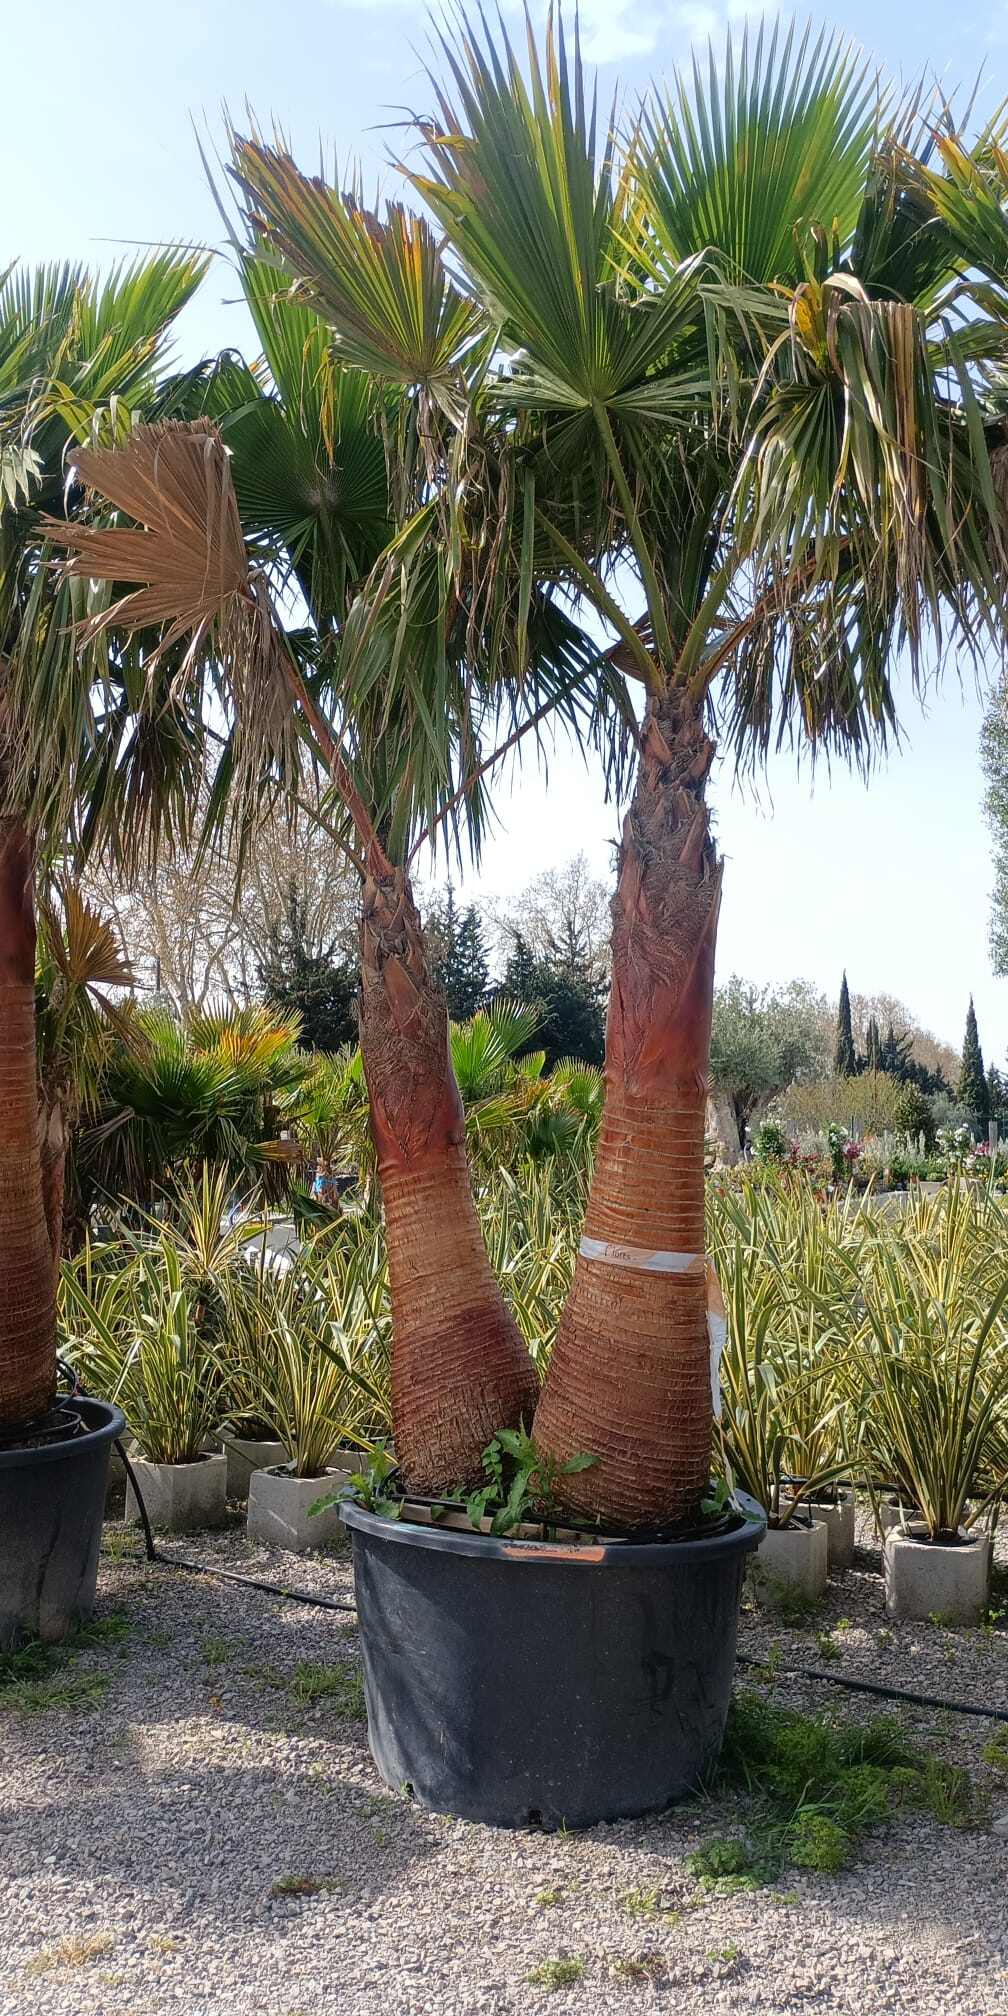 Palmier issus d'un horticulteurs montpelliérain